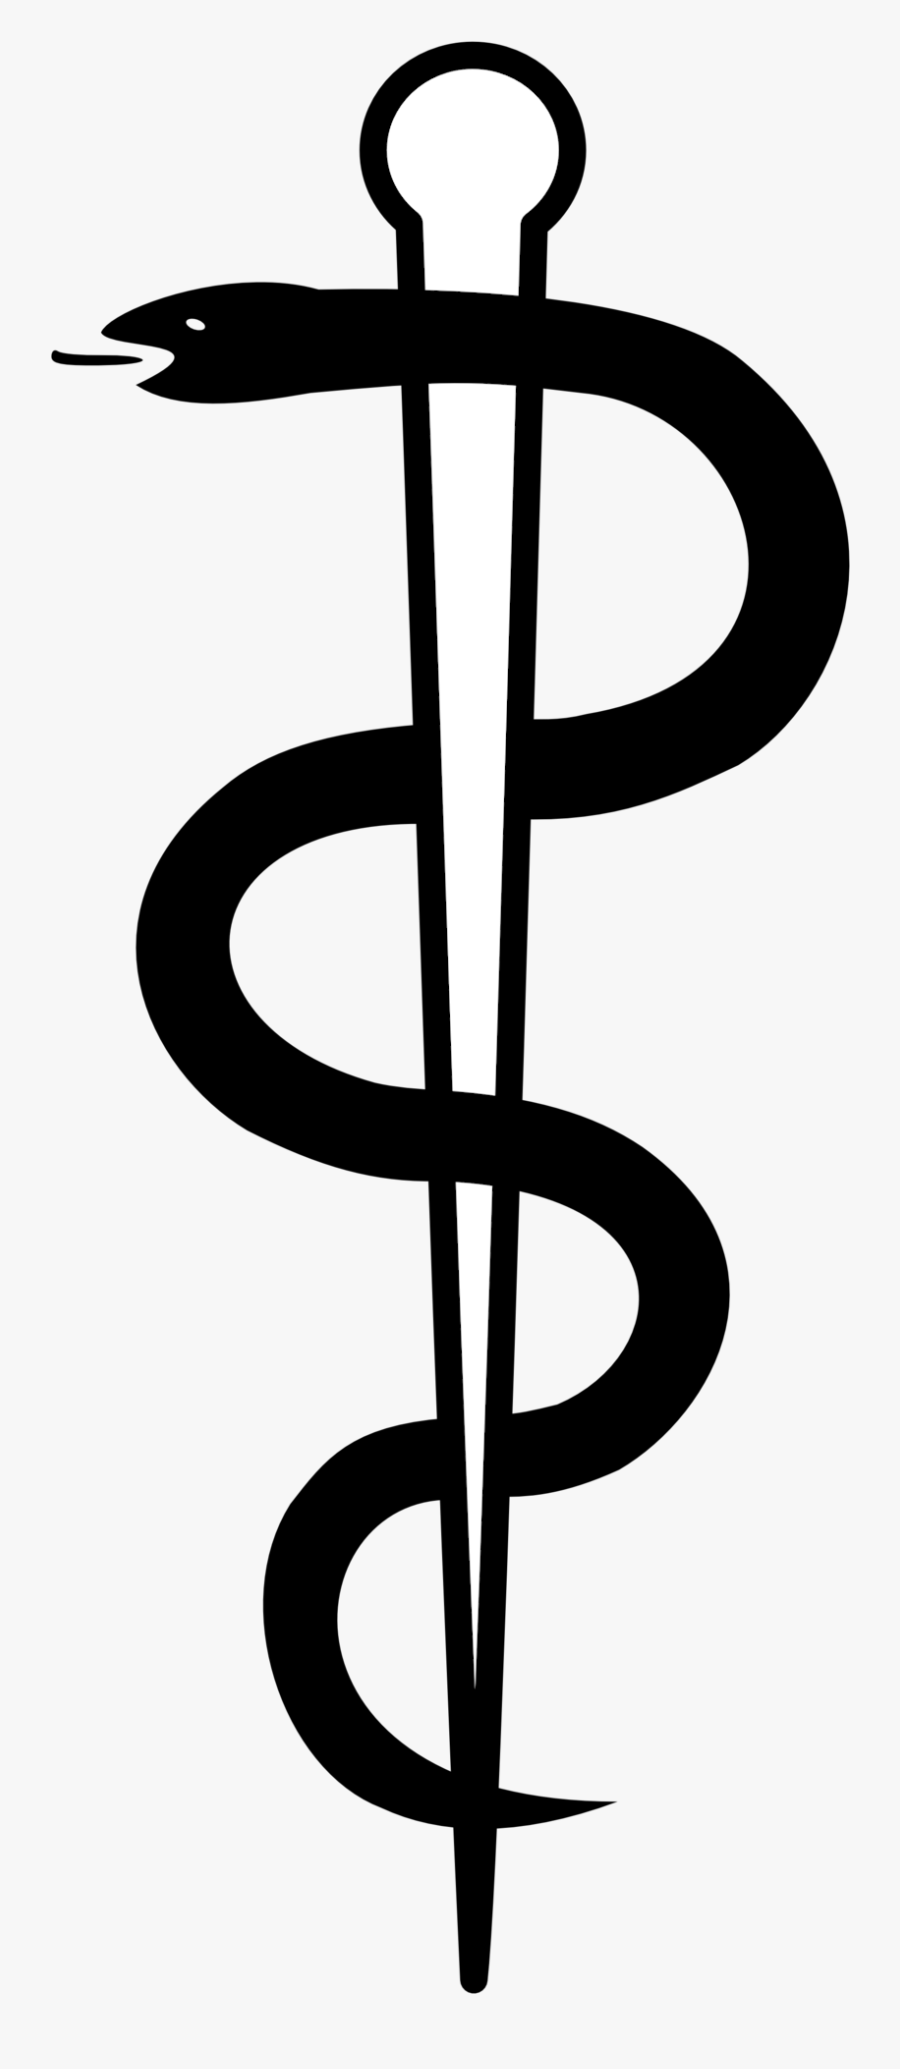 Medical Snake Logo Png, Transparent Clipart